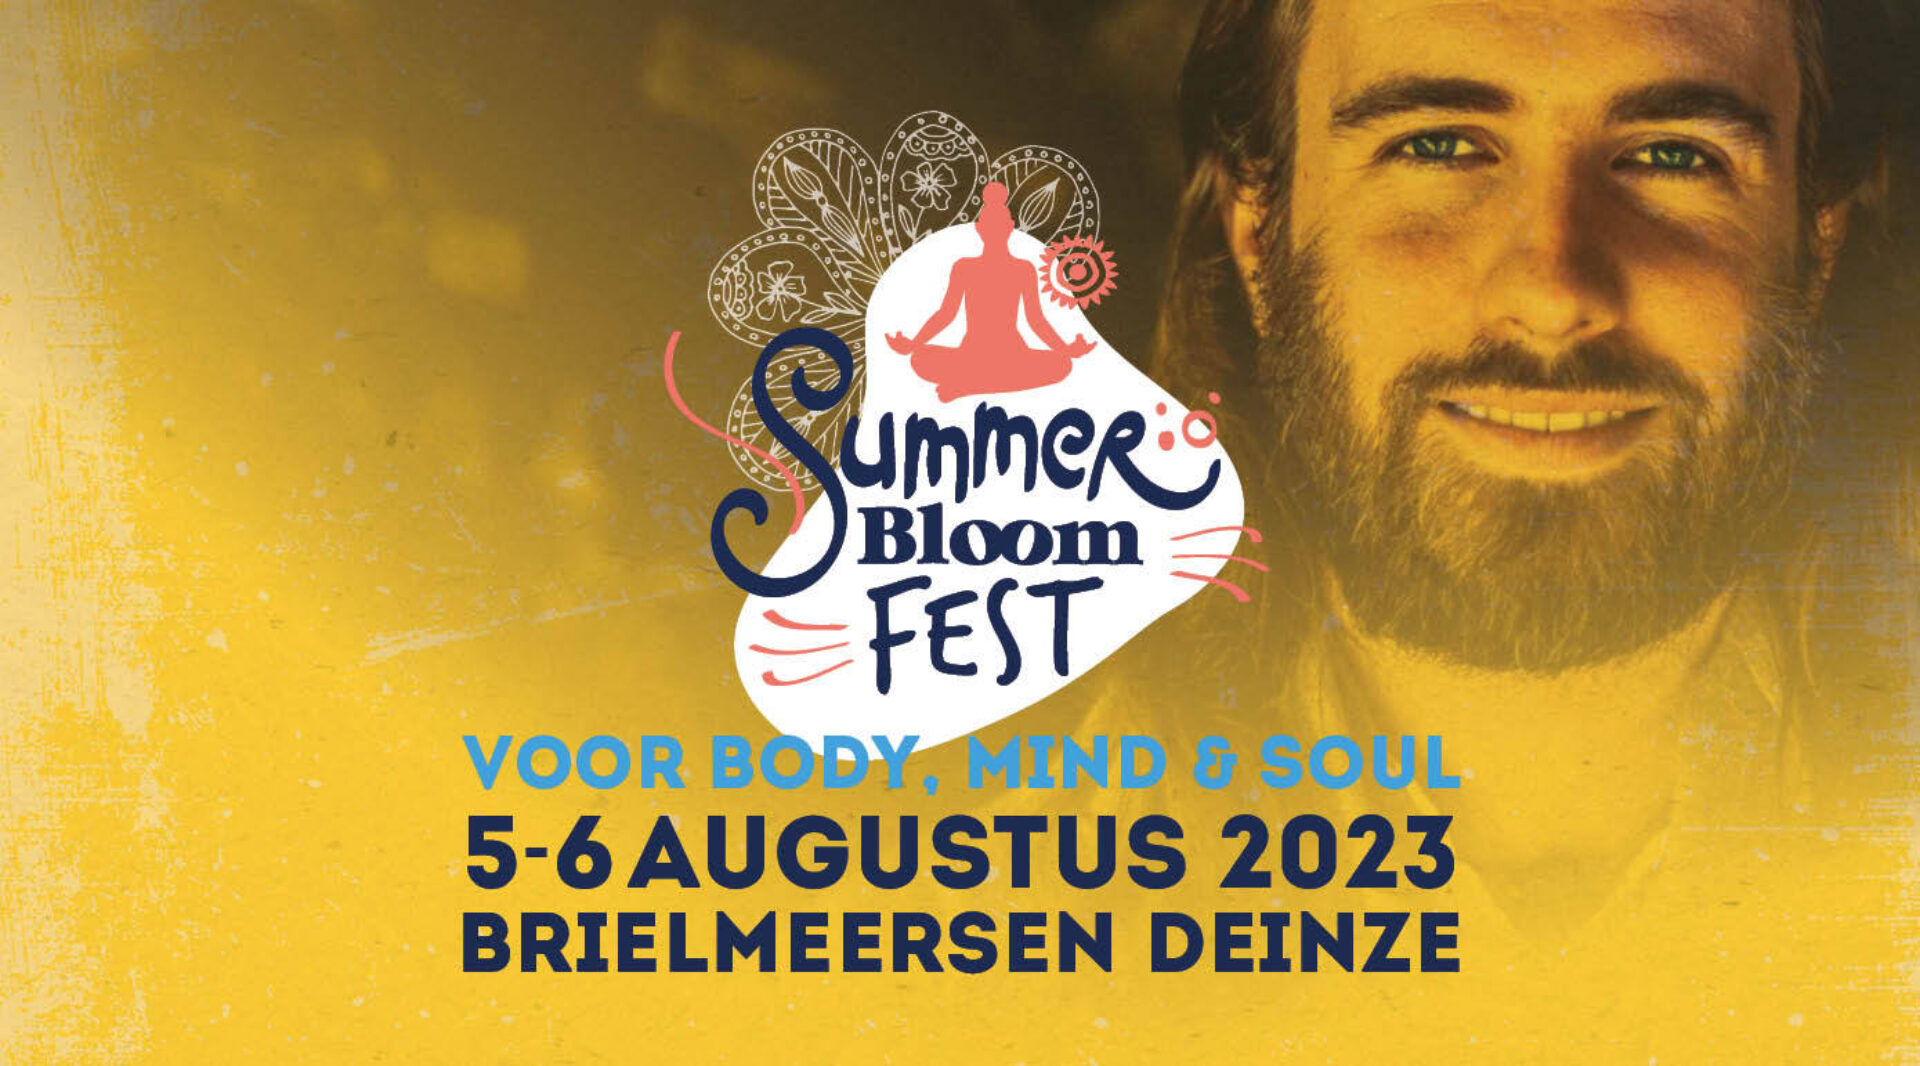 5 & 6 augustus 2023 • Summer Bloom Fest 2.0 • Deinze (BE): de ultieme zomerbeleving voor body, mind & soul